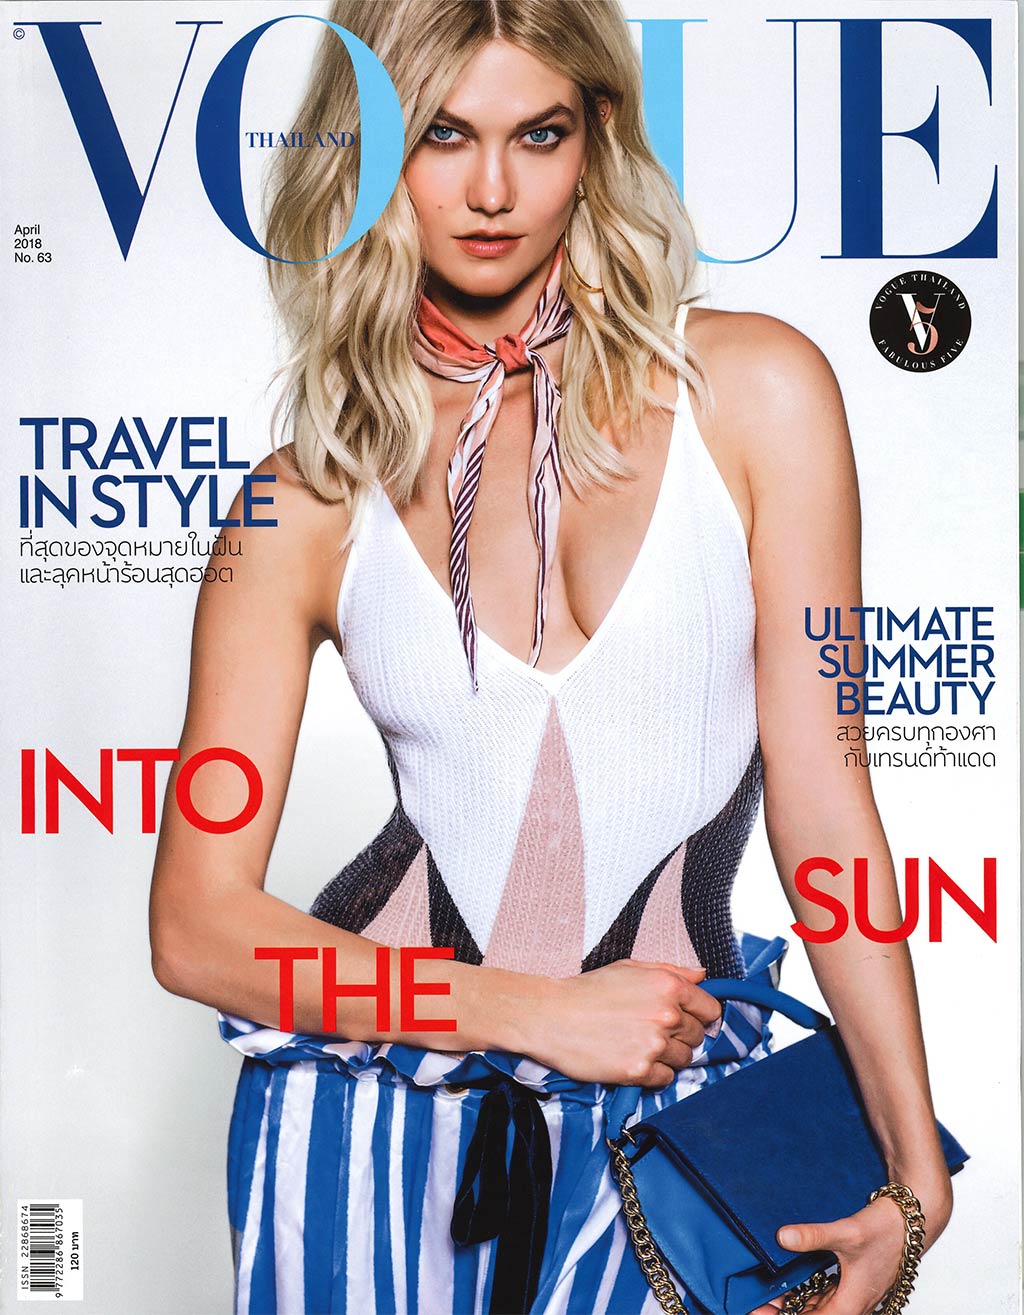 vogue-magazine-april2018-1